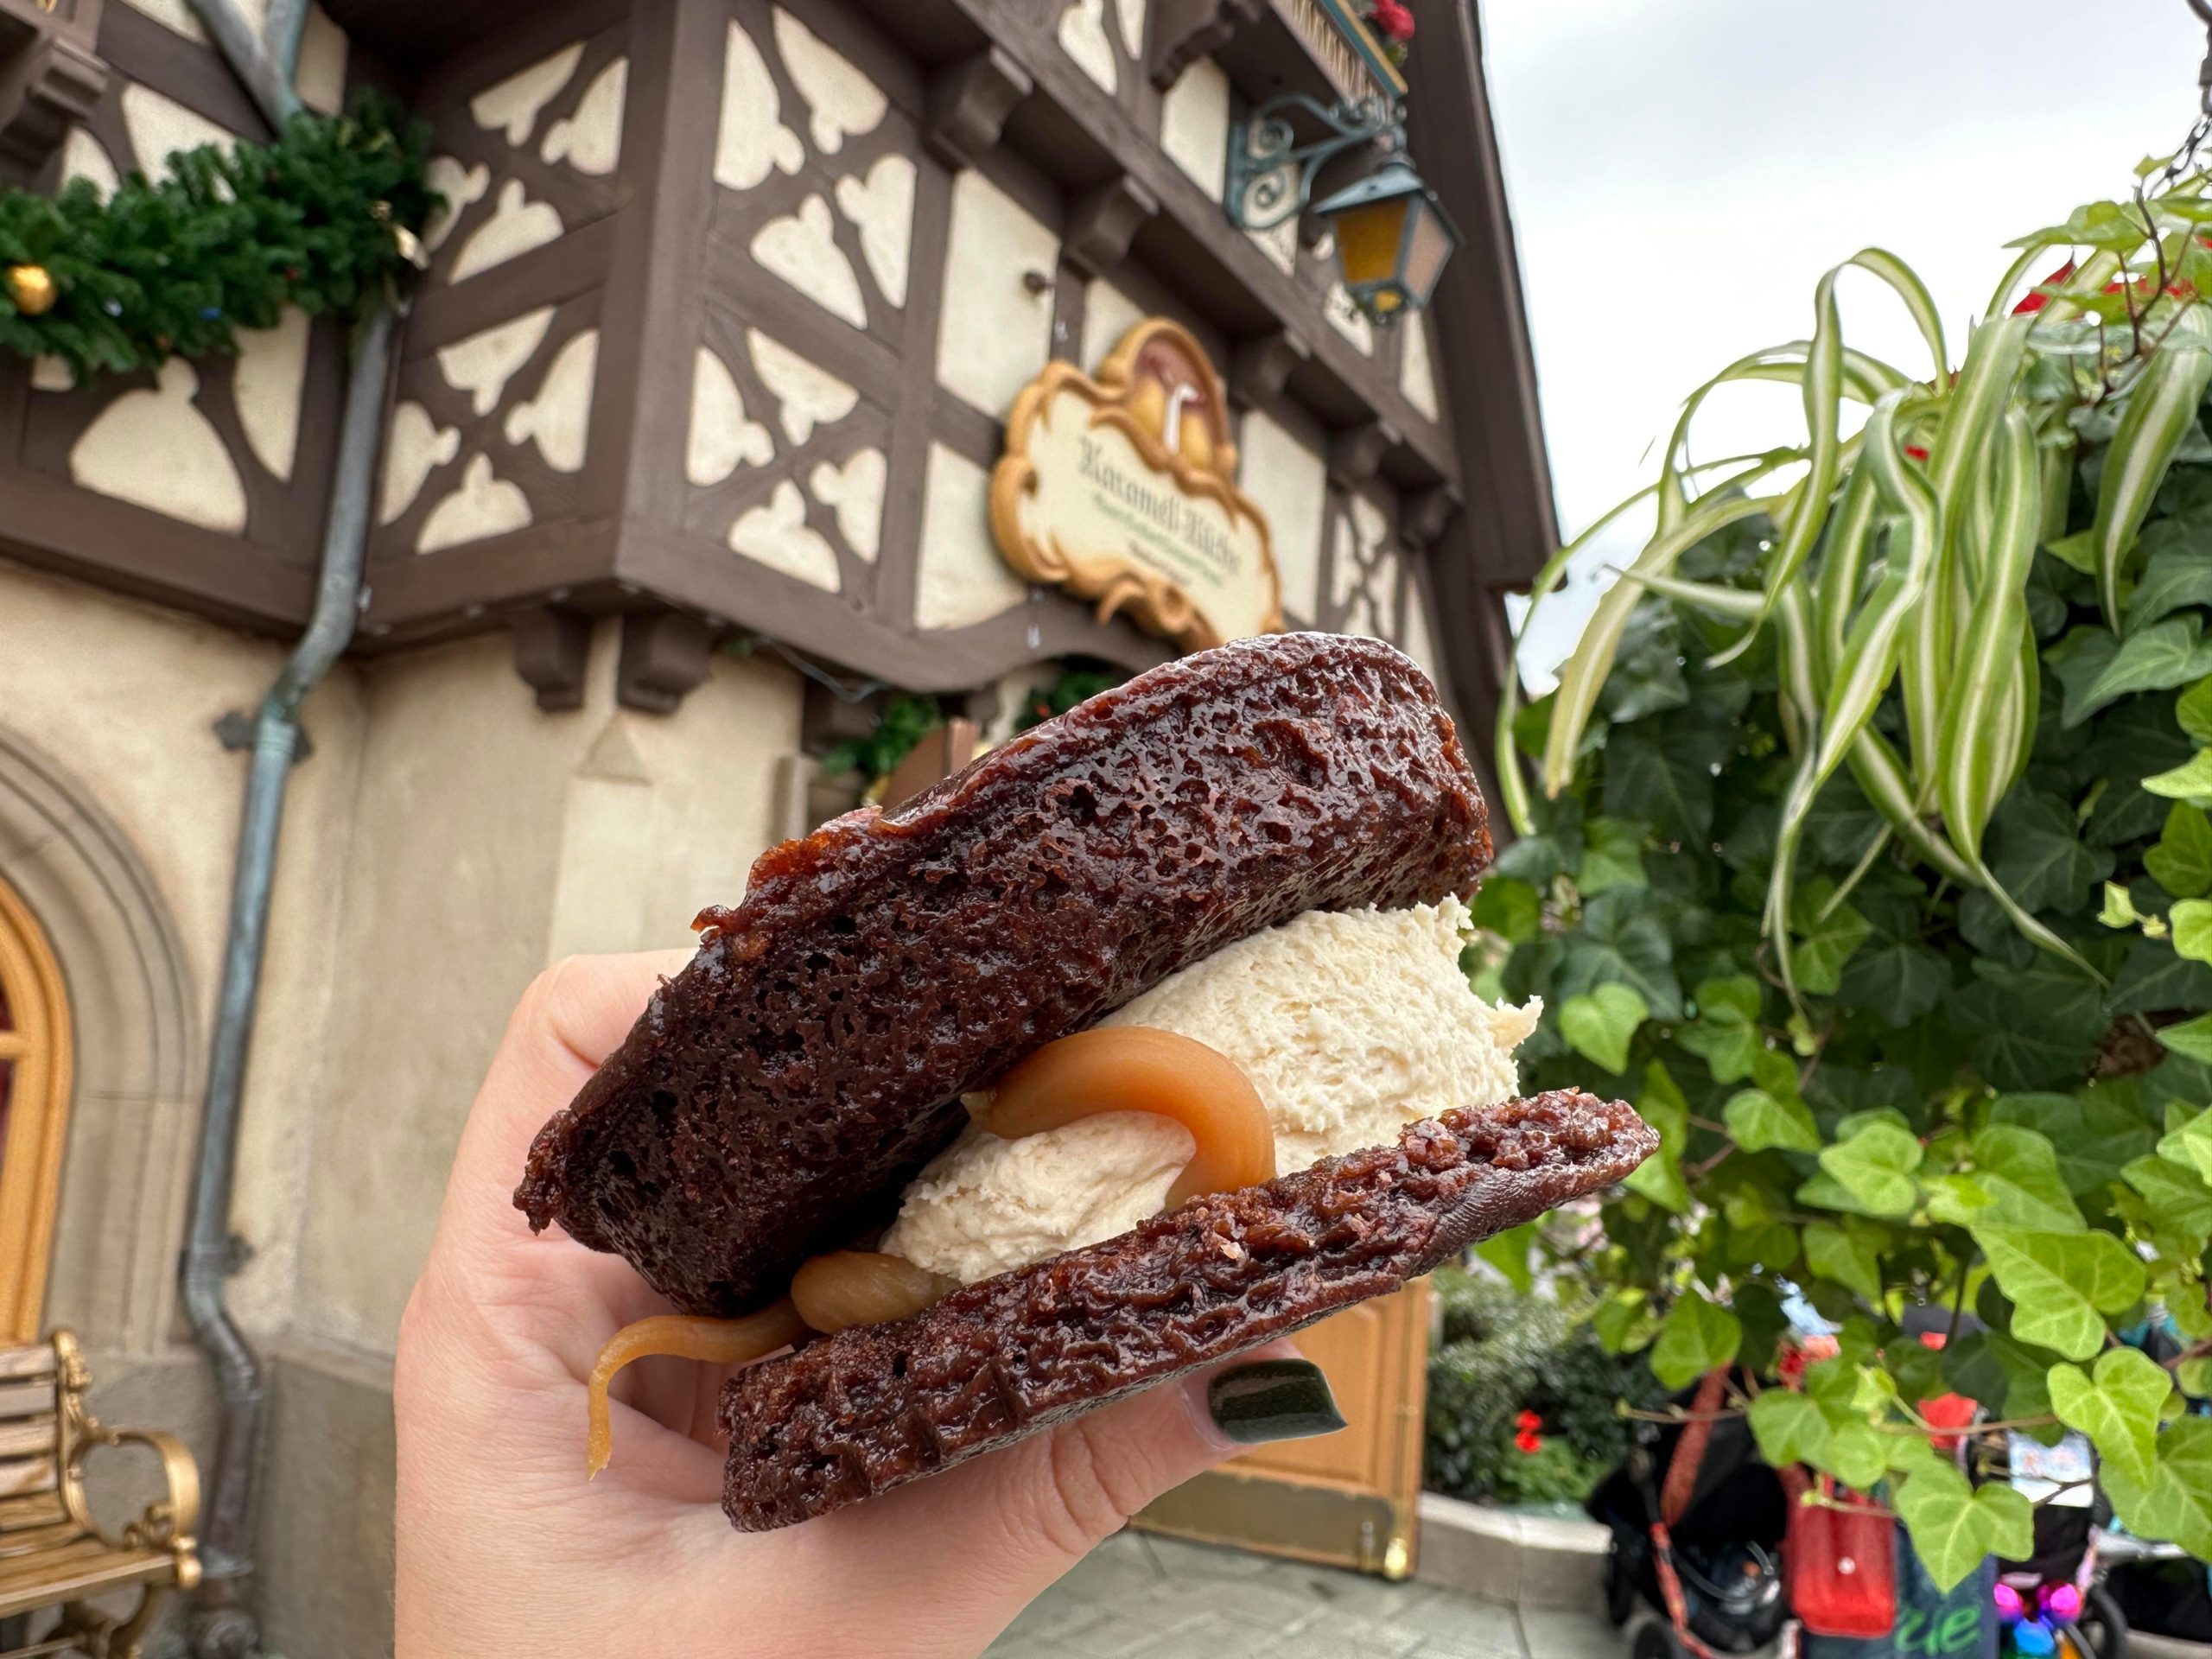 Werther's Original Caramel Chocolate Cookie Sandwich